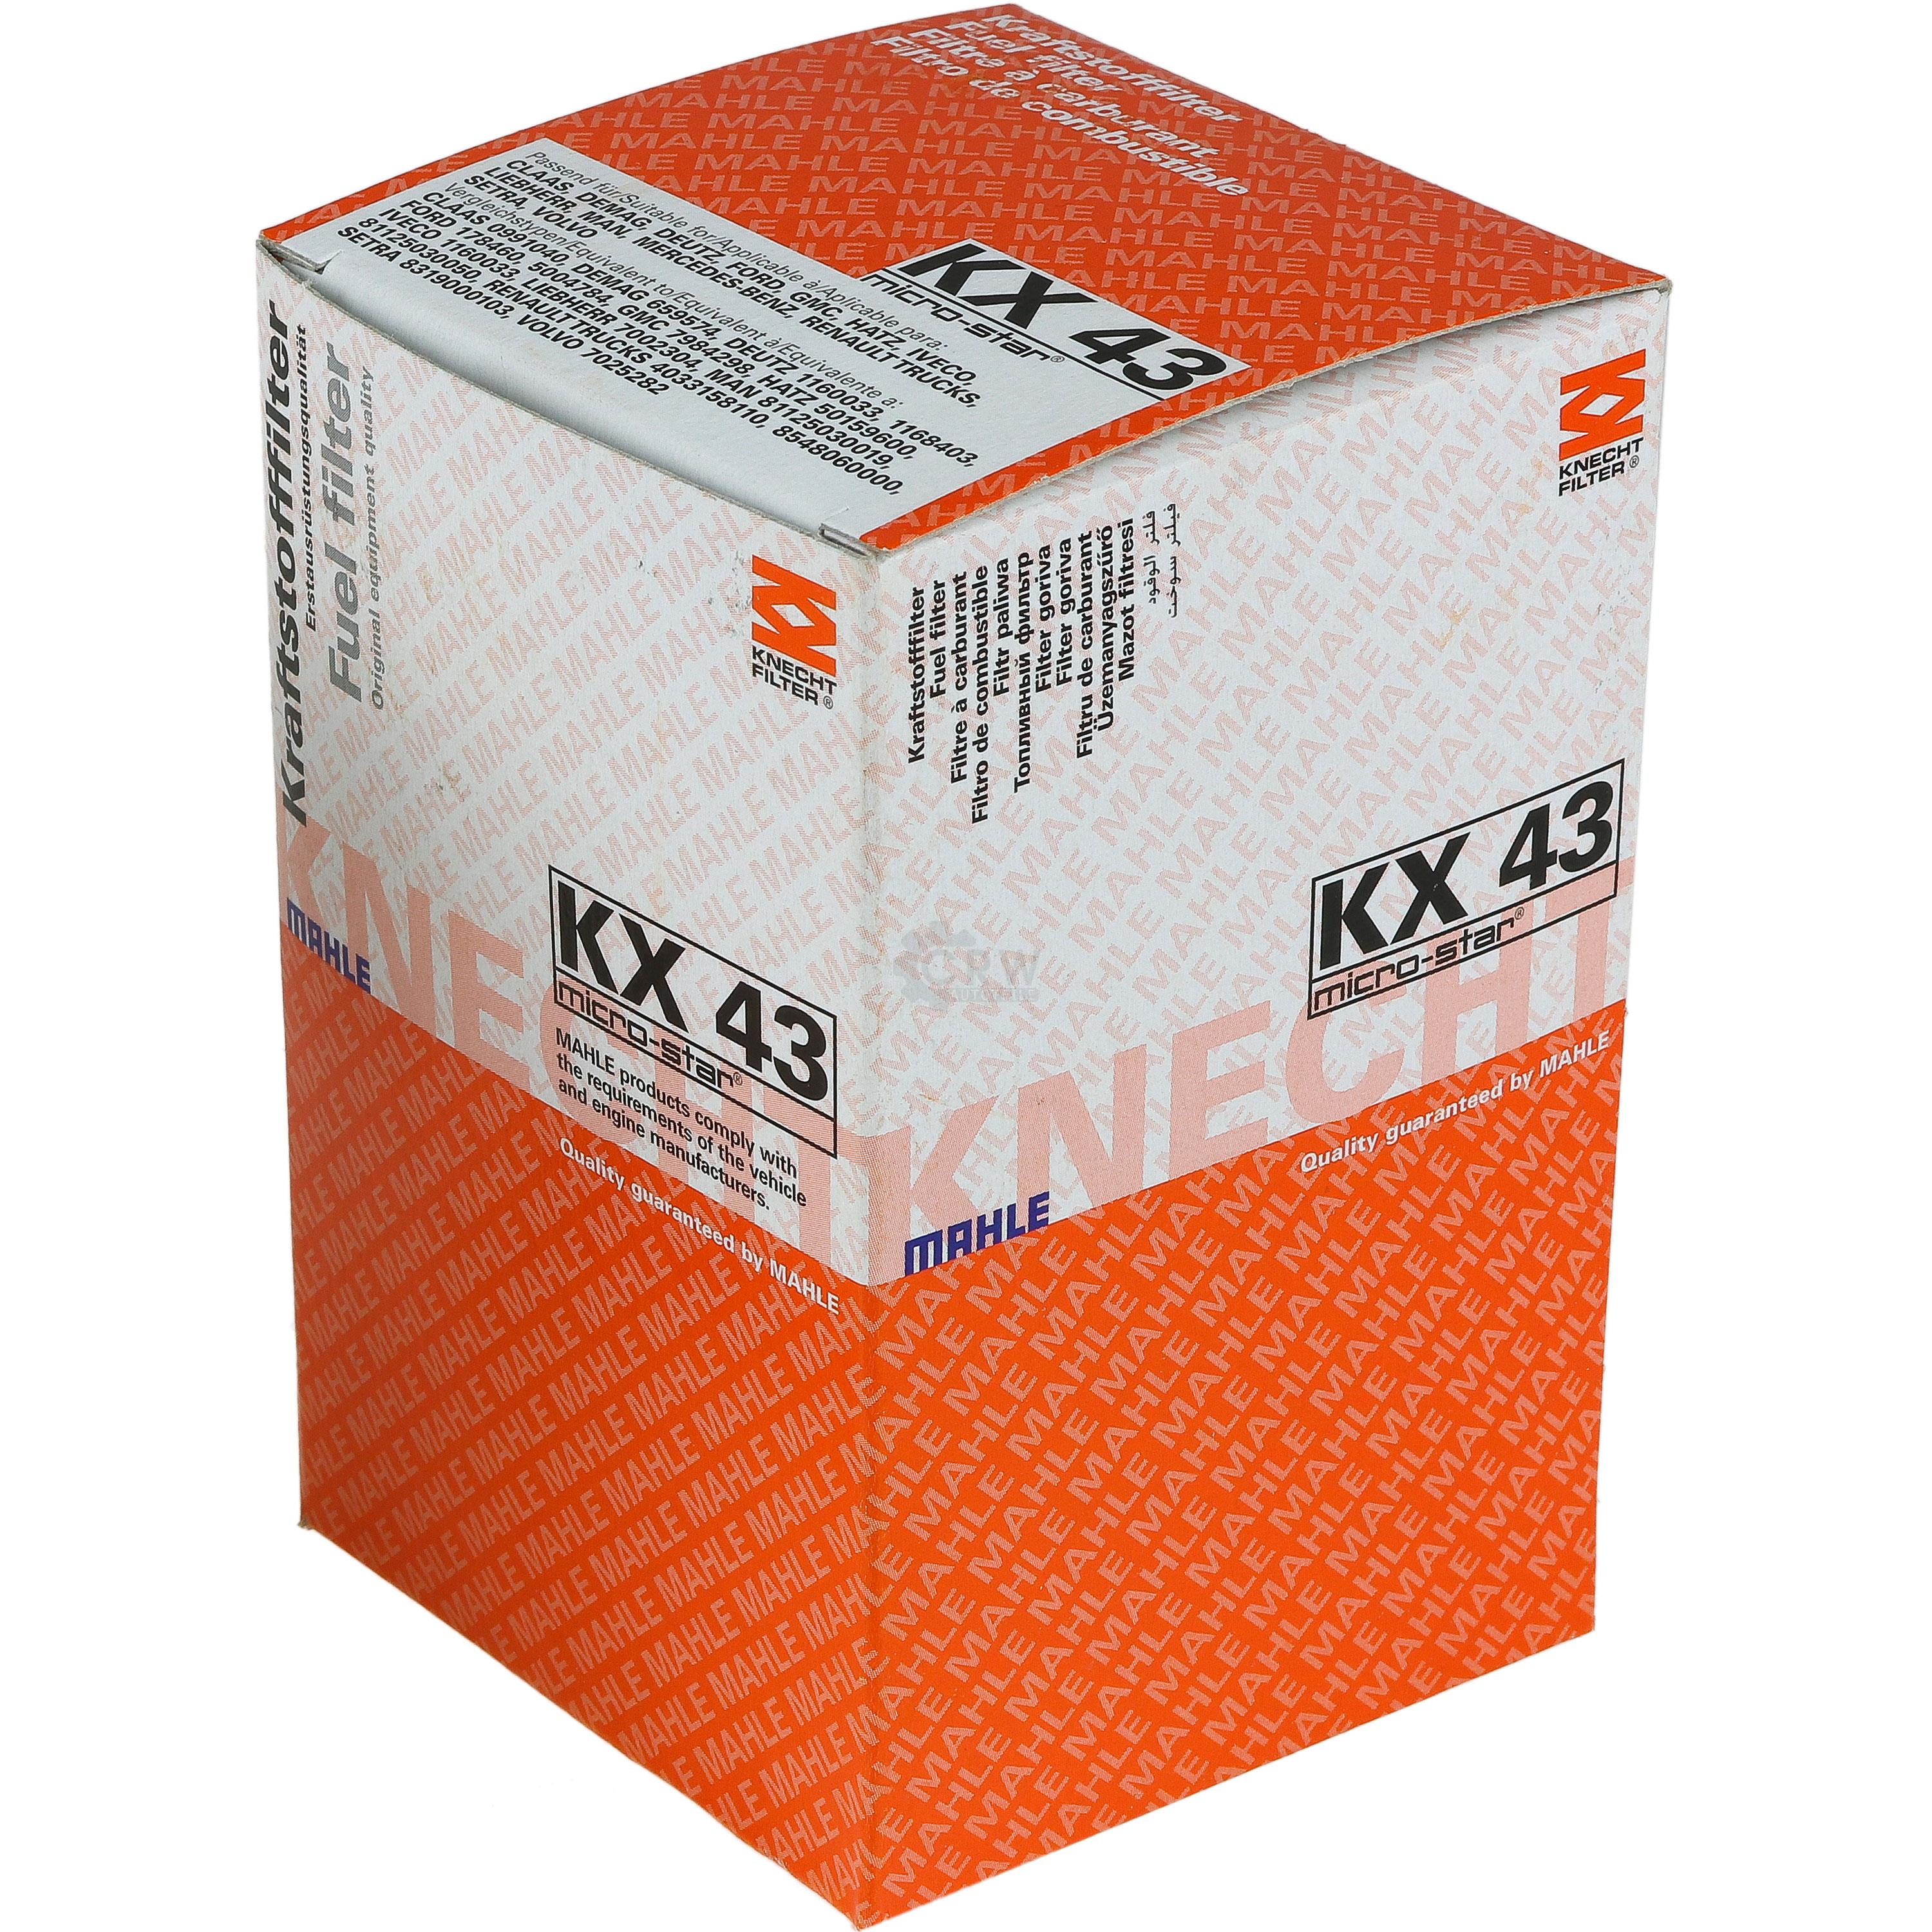 MAHLE / KNECHT Kraftstofffilter KX 43 Fuel Filter